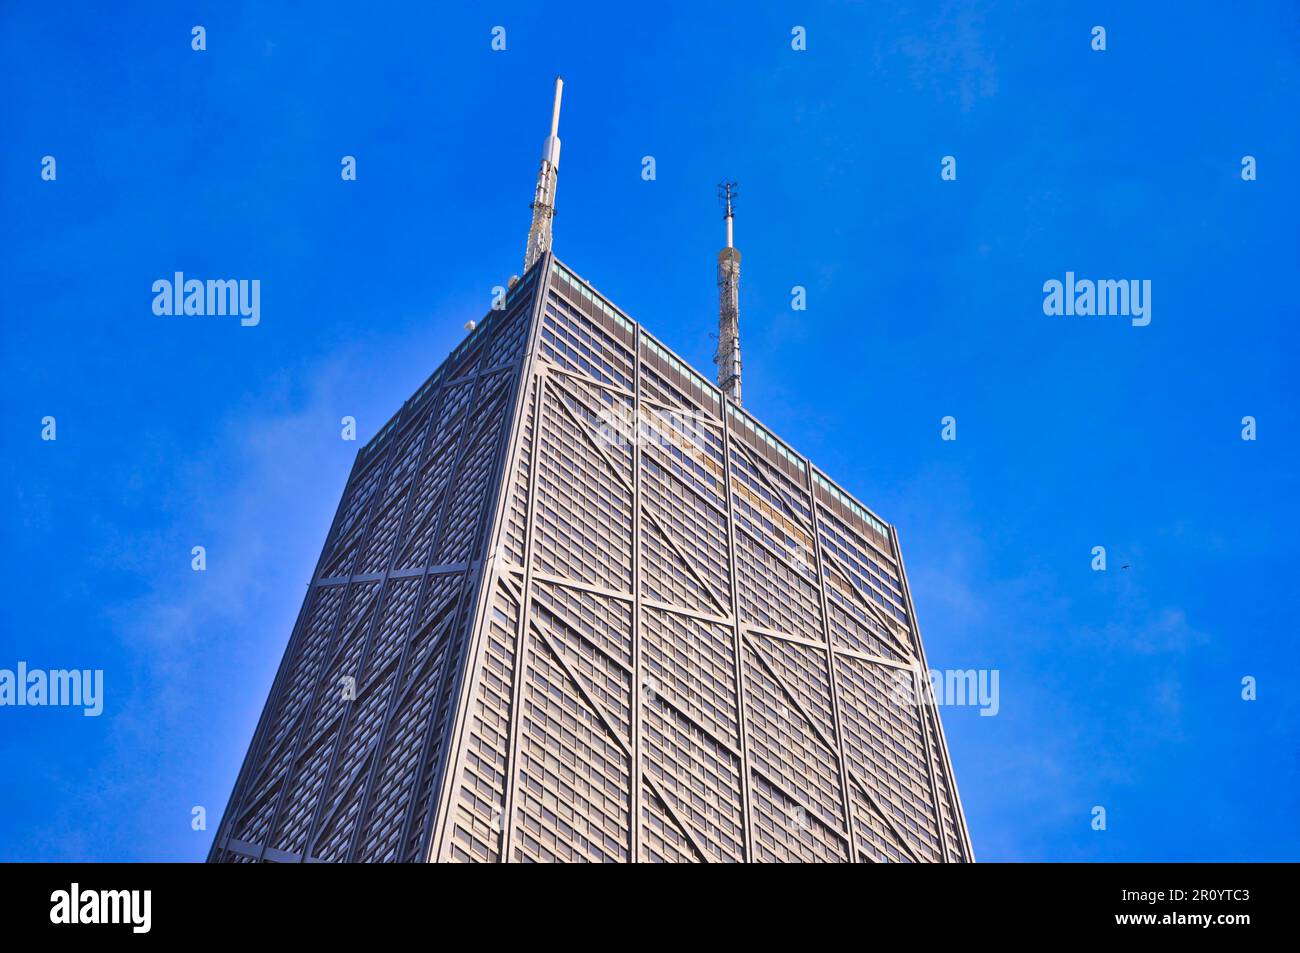 Un imponente grattacielo sovrasta un paesaggio urbano caratterizzato da una selezione di strutture contemporanee in primo piano Foto Stock